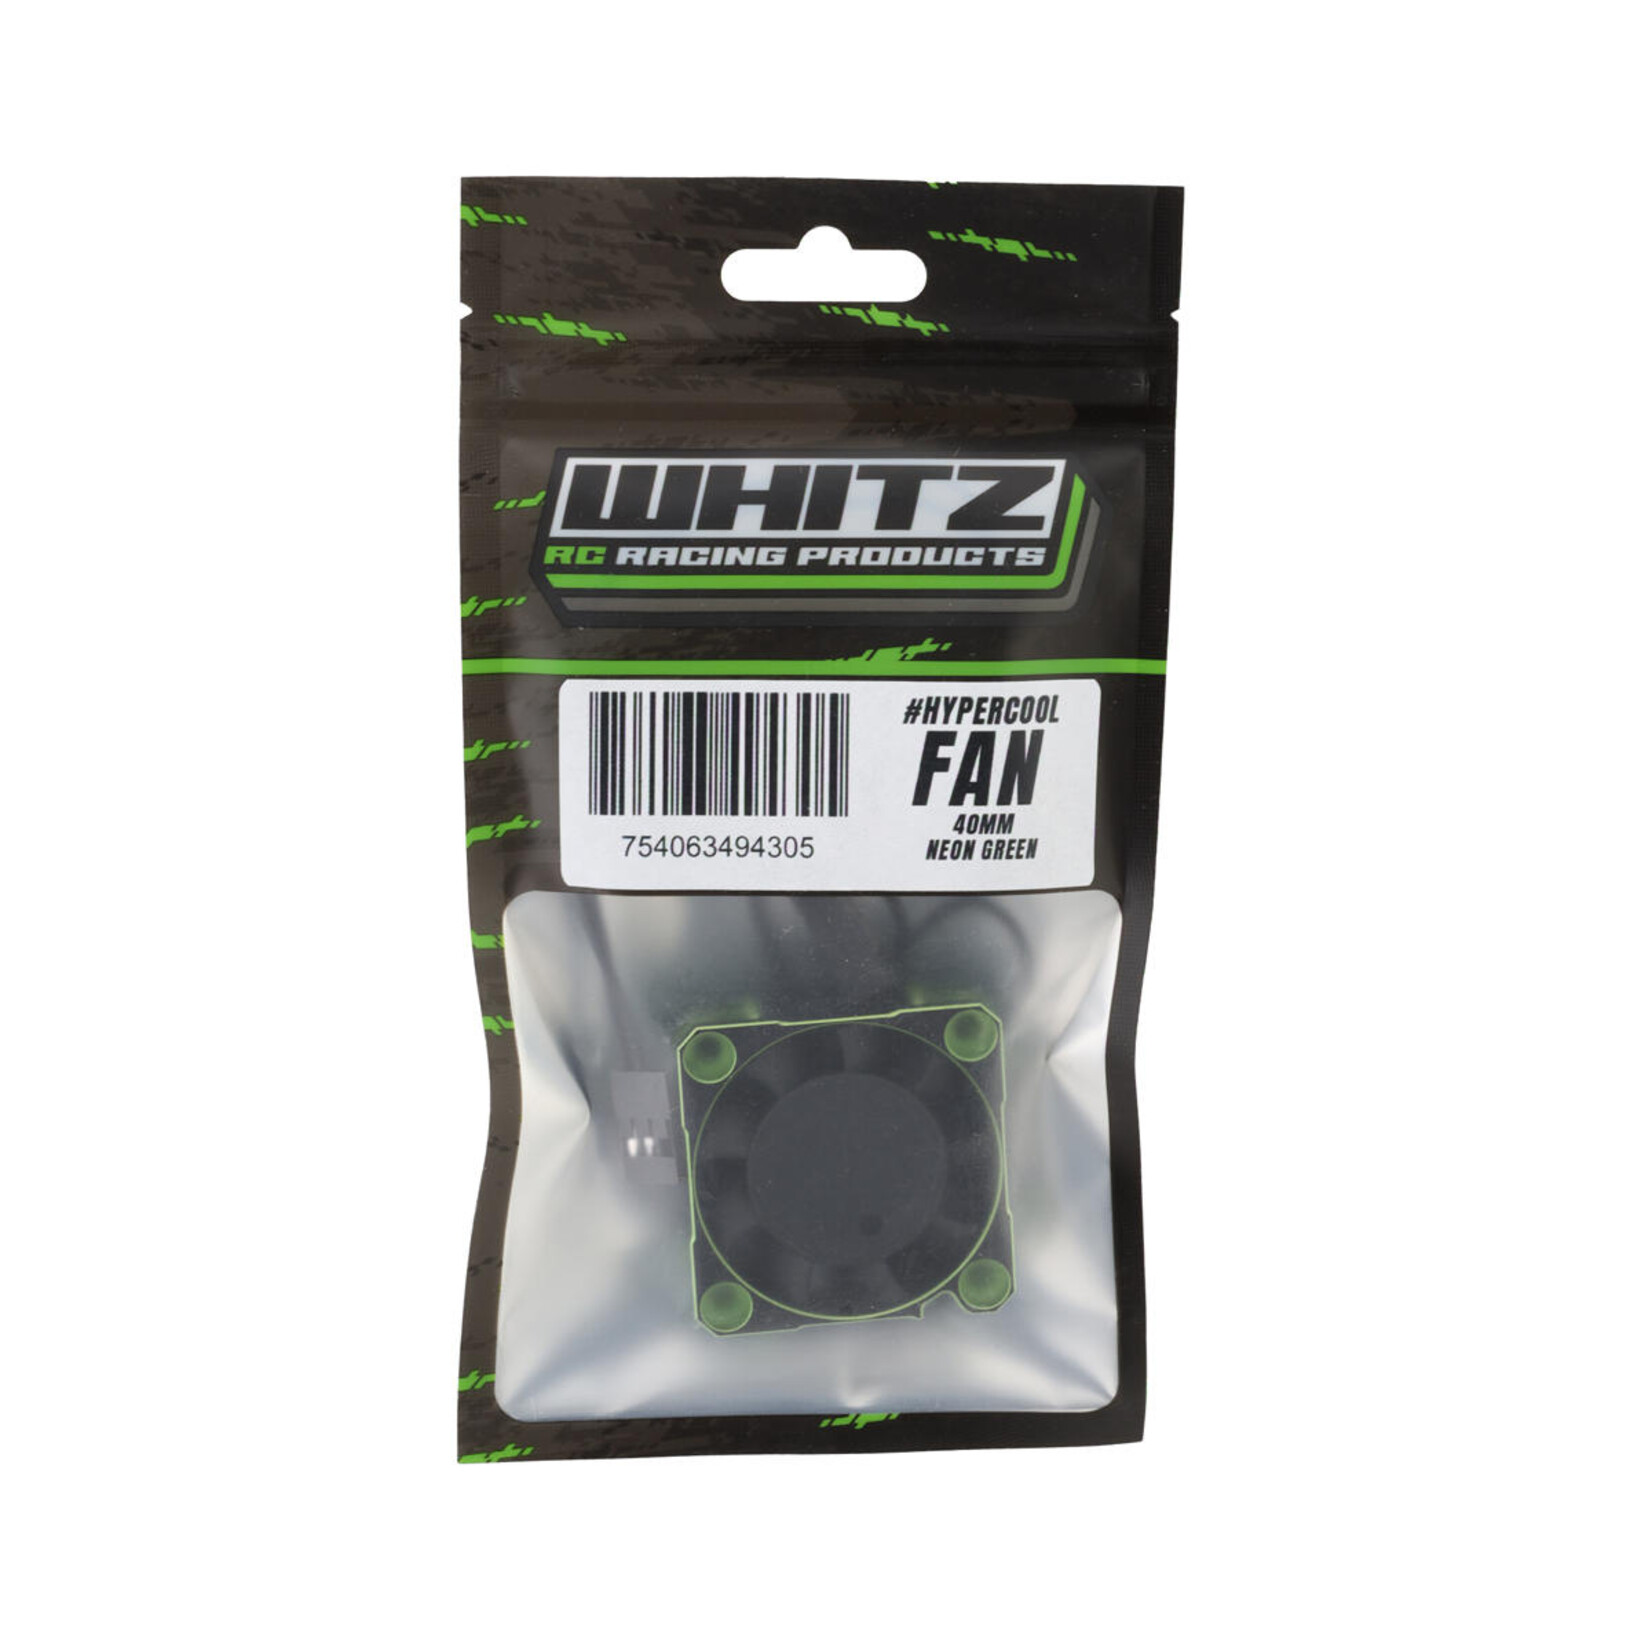 Whitz Racing Products Whitz Racing Products 40mm HyperCool Aluminum Motor Cooling Fan (Neon Green) #WRP-HC-GRN40